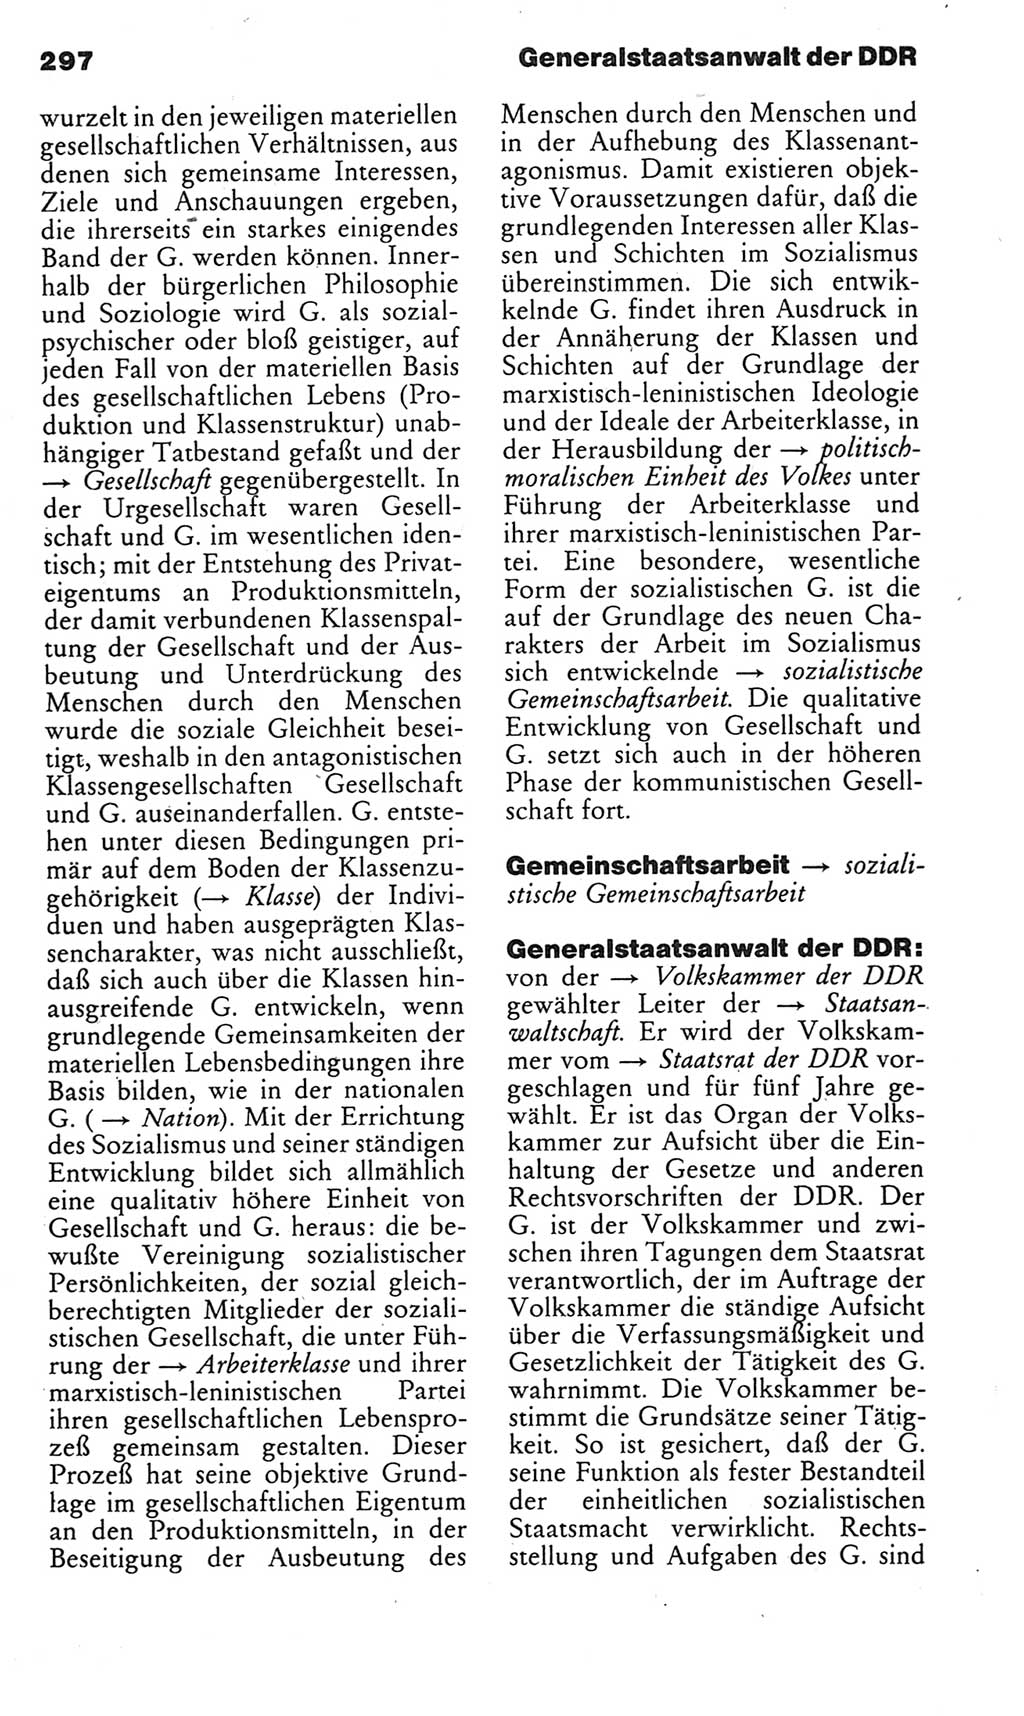 Kleines politisches Wörterbuch [Deutsche Demokratische Republik (DDR)] 1985, Seite 297 (Kl. pol. Wb. DDR 1985, S. 297)